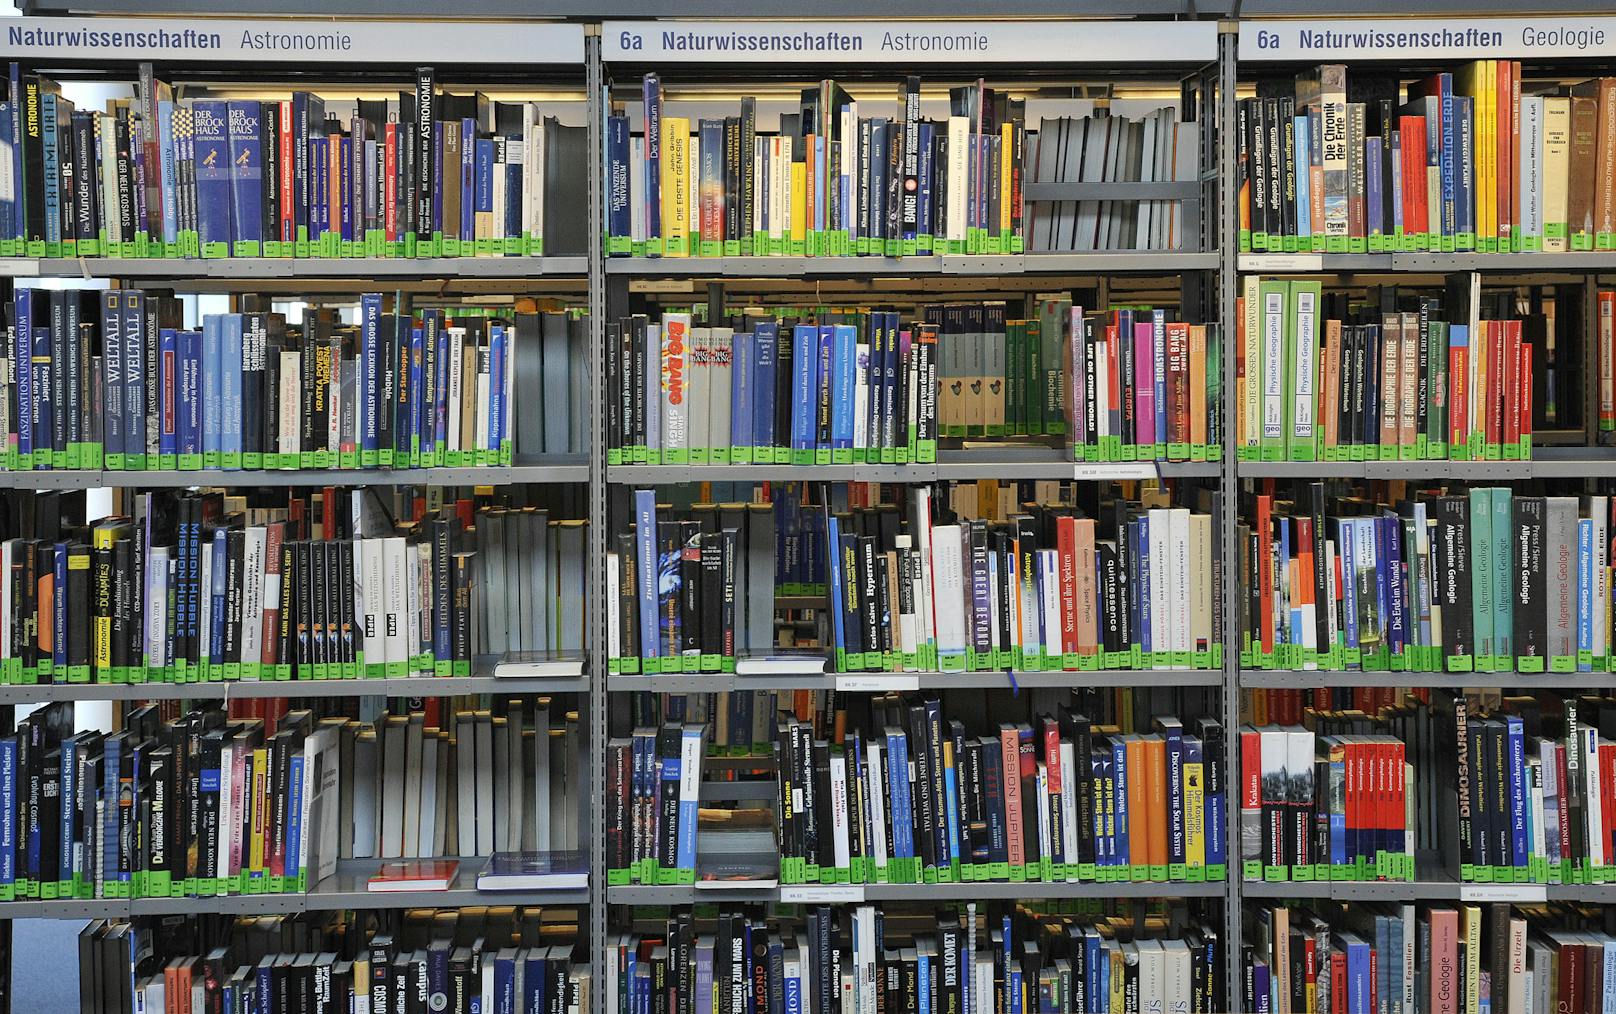 Während der Schließzeit haben mehr als 17.000 Menschen das Gratis-Angebot der Büchereien zur Nutzung der Online-Angebote genutzt. Für sie gibt es die Möglichkeit, um 18 Euro das gesamte Angebot der Büchereien digital und physisch bis Jahresende weiter zu nutzen.